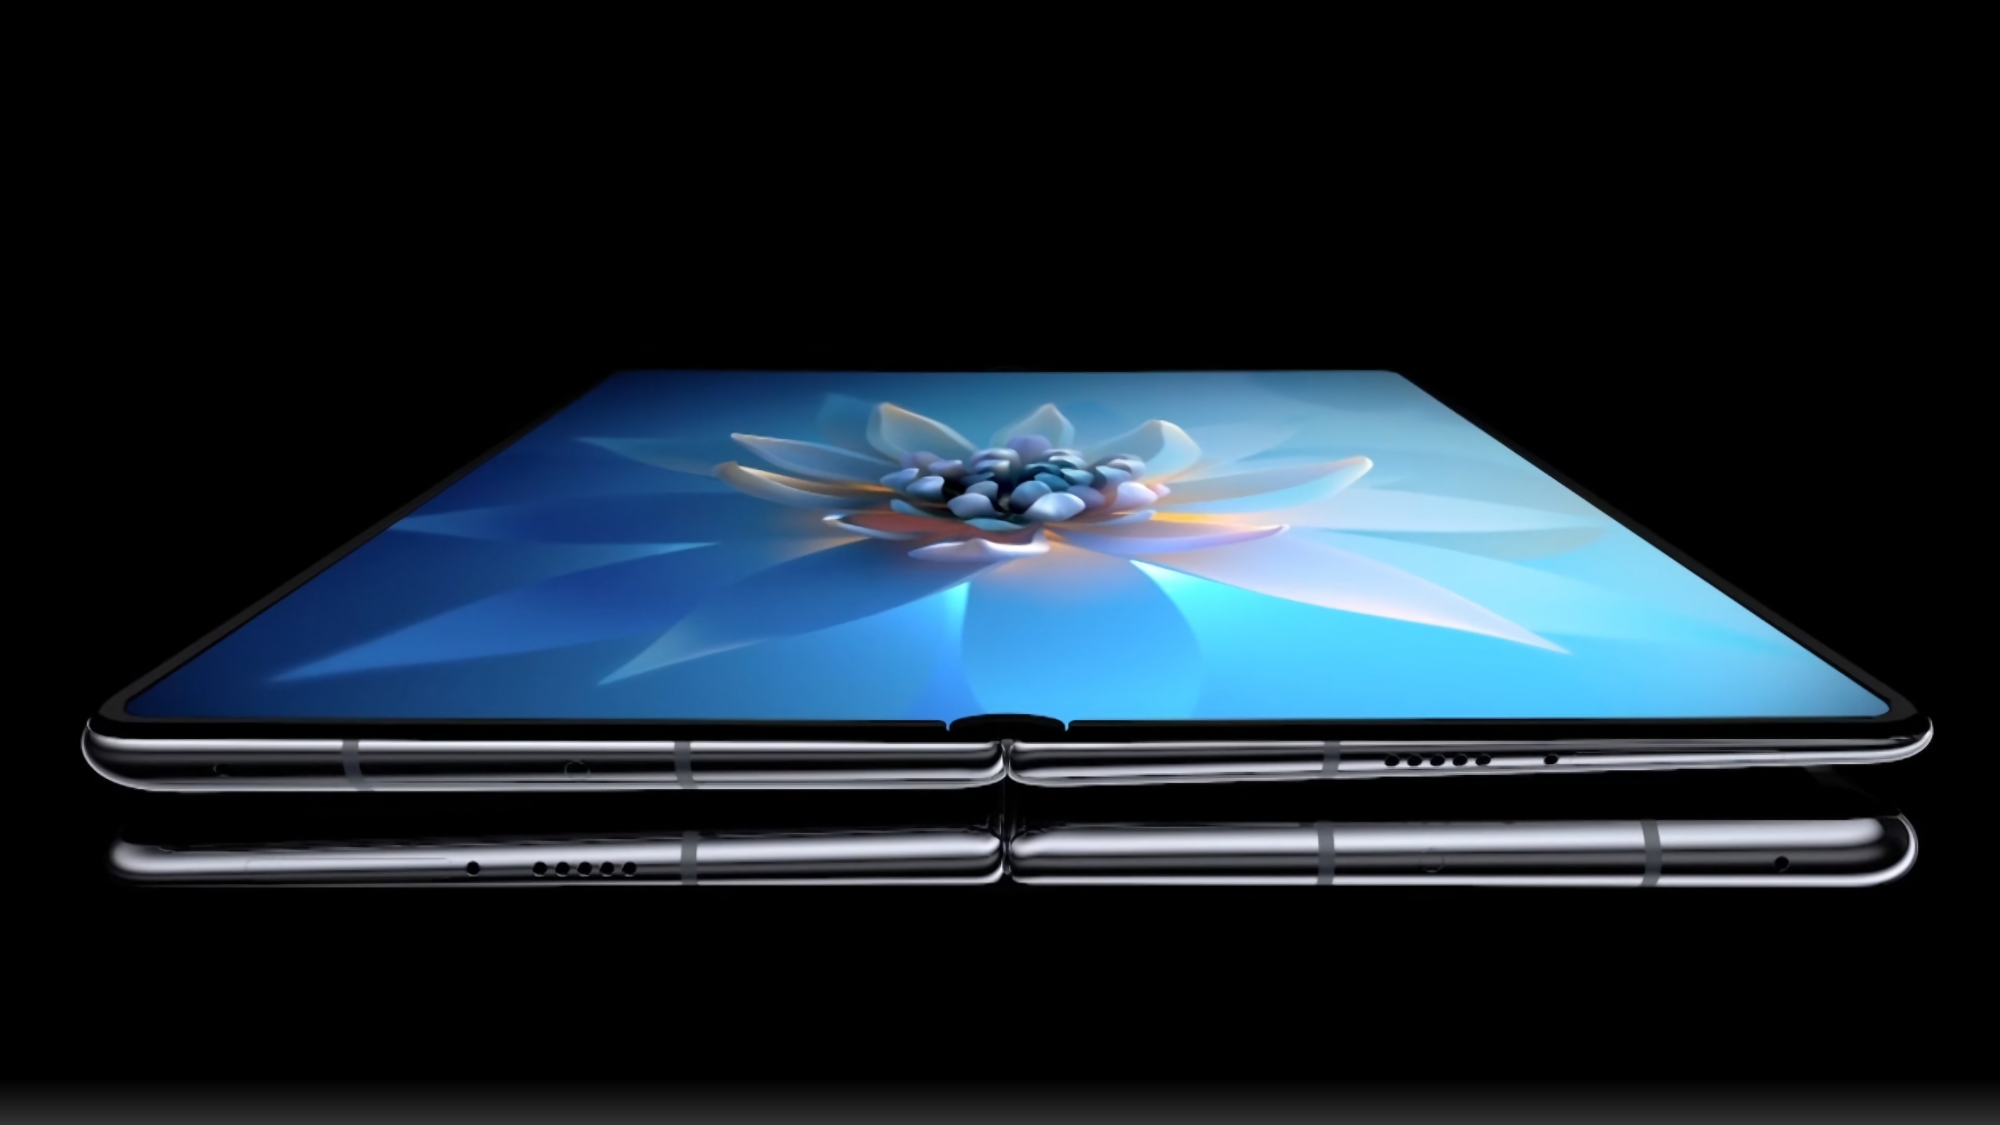 Insider : Le Huawei Mate X3 dispose d'un écran principal de 7,8″ avec un taux de rafraîchissement de 120 Hz et une protection IPX8